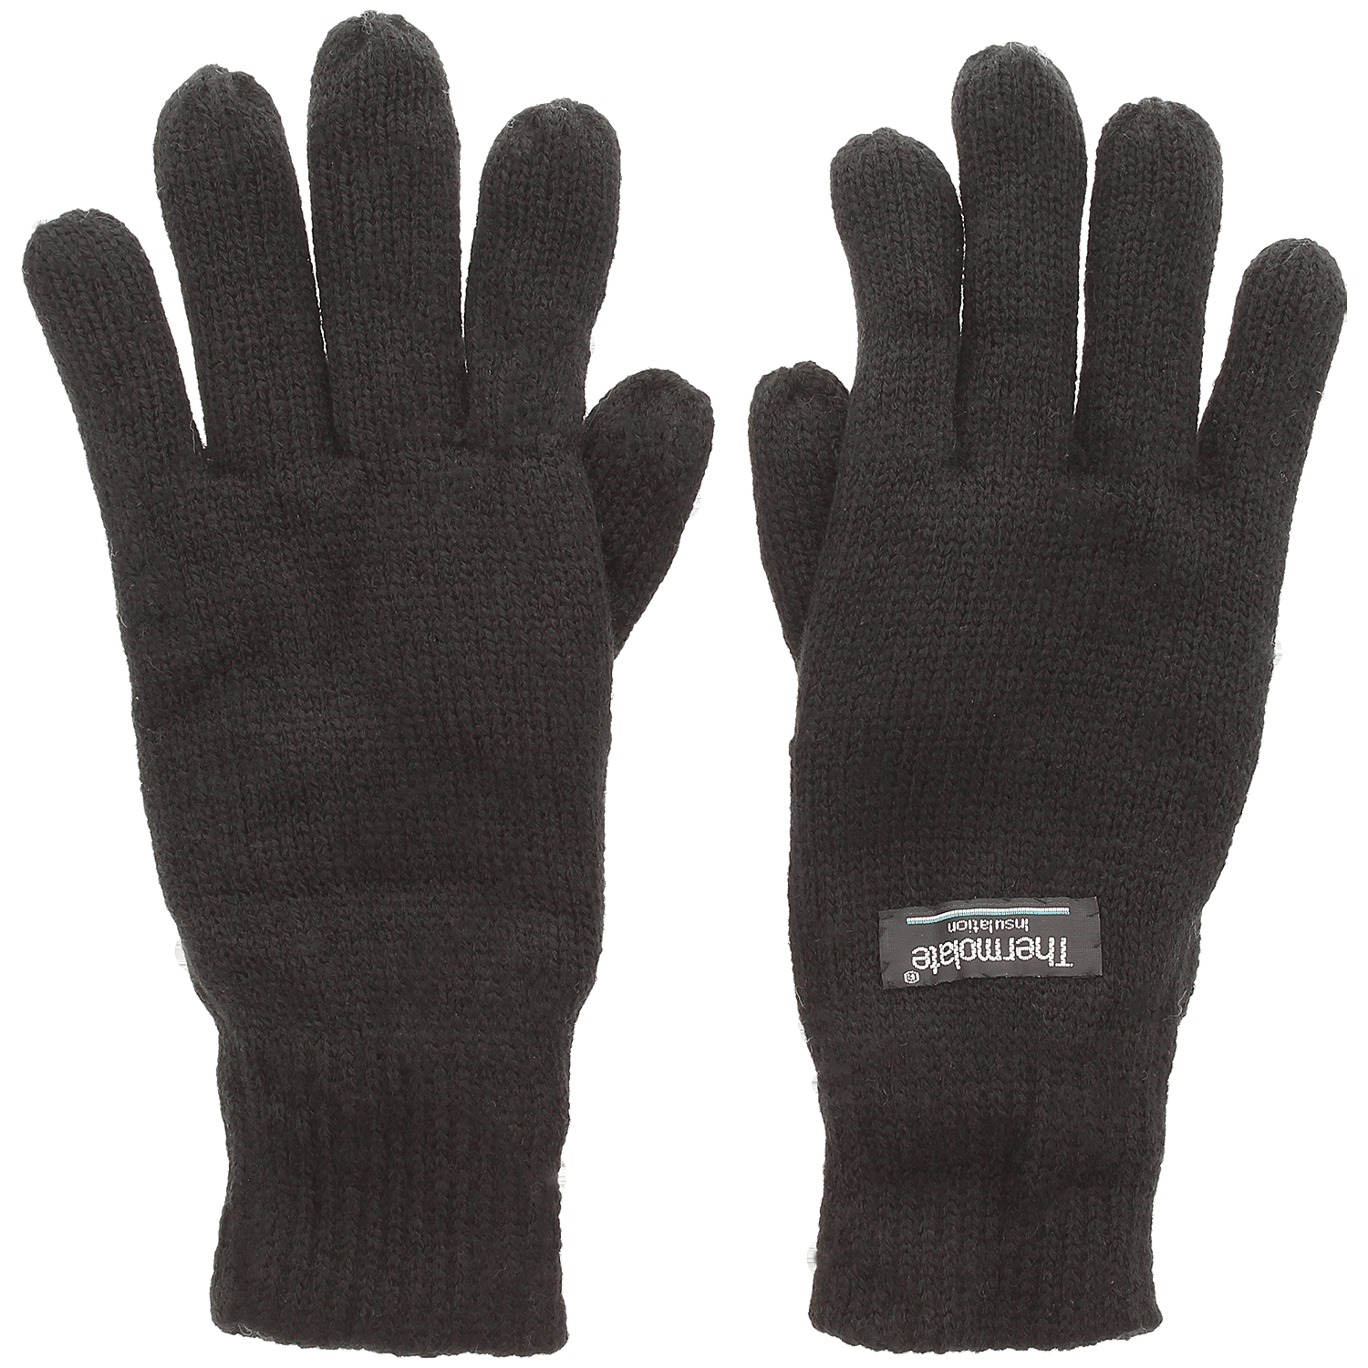 Thermolate handschoenen